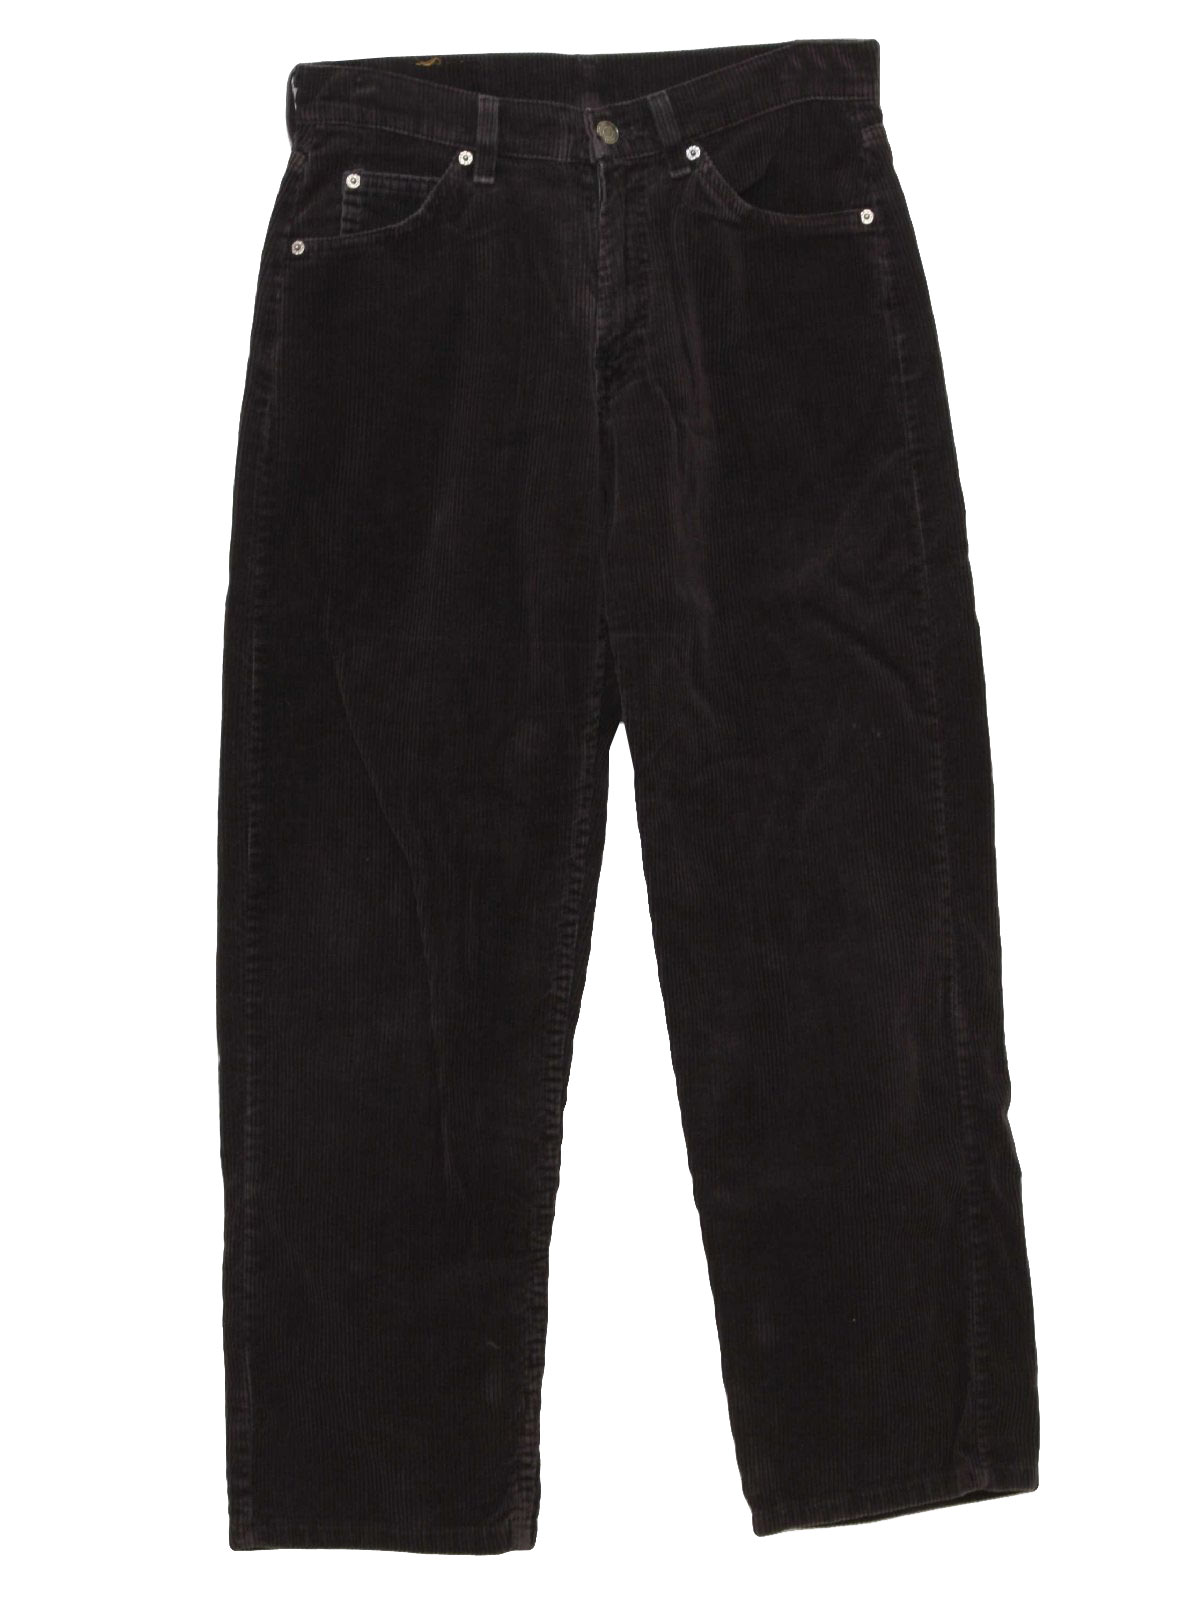 Retro 1990's Pants (Levis) : 90s -Levis- Mens black cotton polyester ...